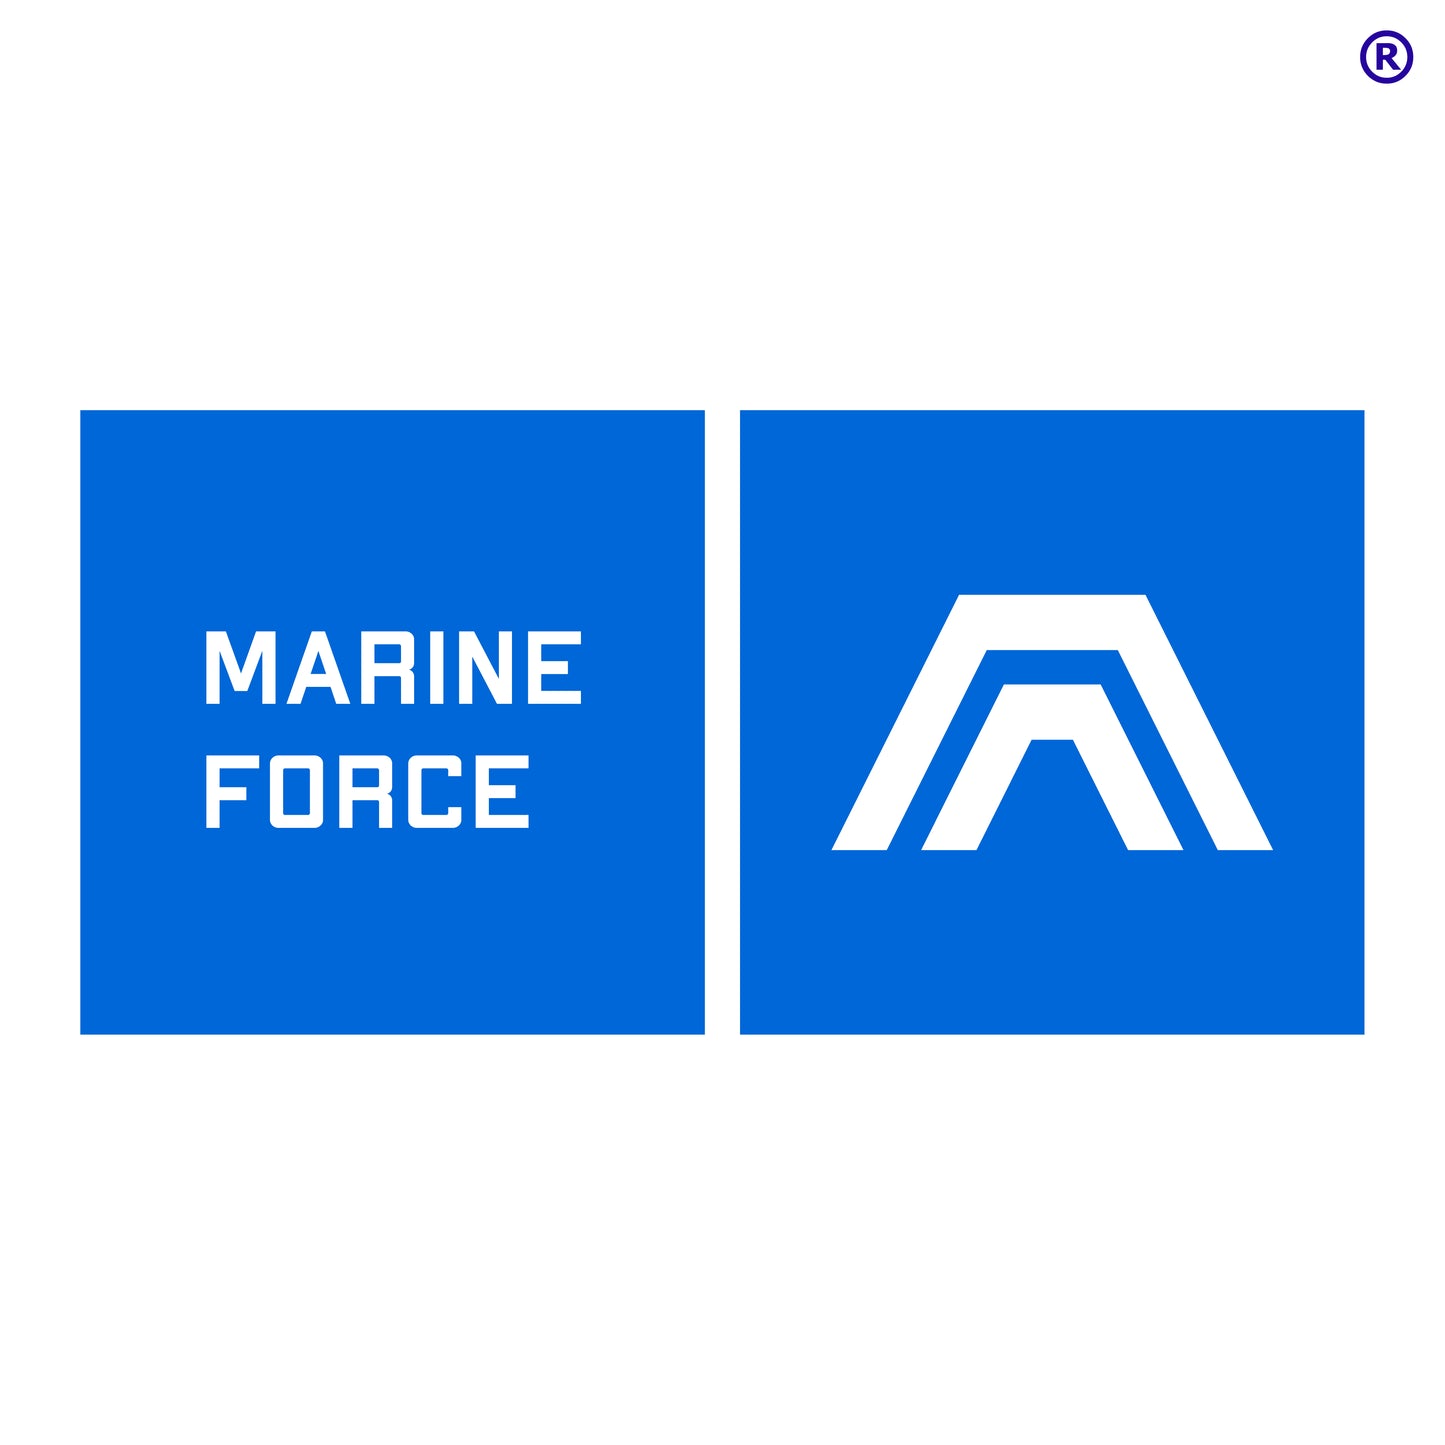 Kapuzenpullover mit Wappen der Marine Force